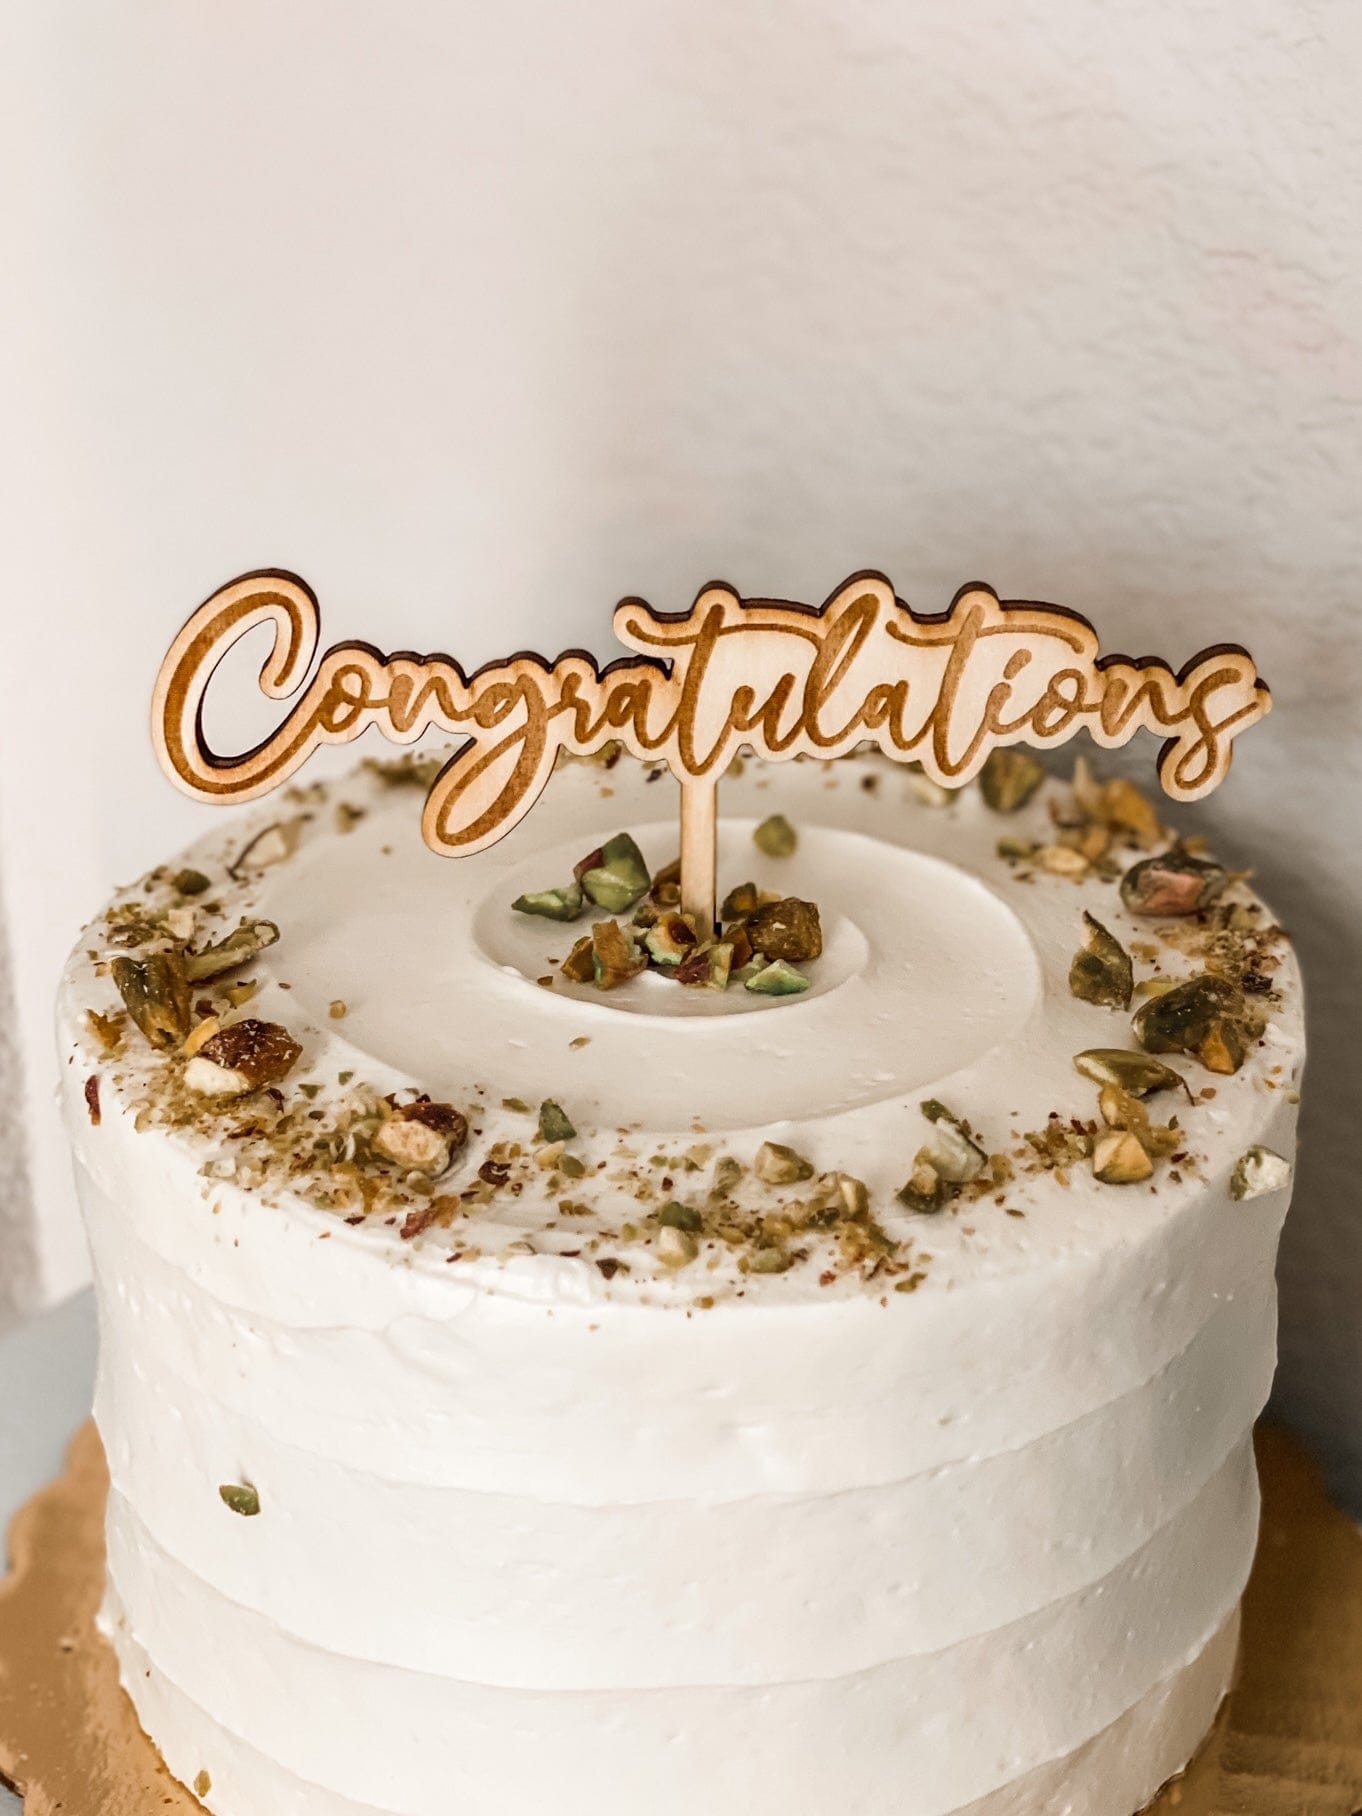 Cake Topper Congratulations